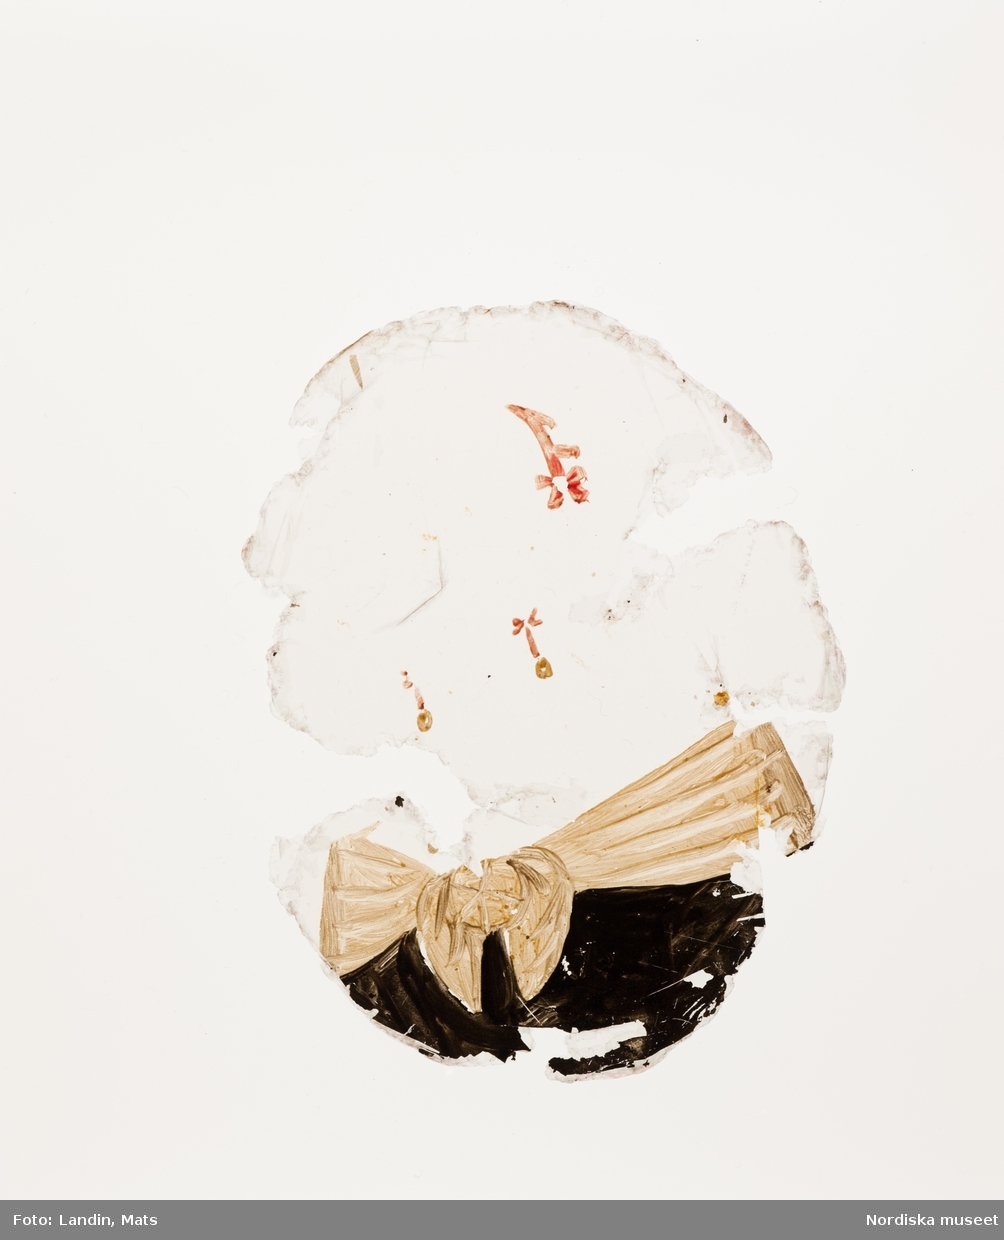 Katalogkort:
"Målning på kopparplåt, osign. Enligt uppgift av givaren föreställande en fröken Hahne. I fodral av svart pressat läder på stomme av papp med 13 glimmerskivor med målade dräkter och dräktdetaljer enligt uppg. målade av prof. N. H. Sjöborg (1767-1838)."
"Blont hår, mörkgrå ögon, rosafärgad klädning besatt med vita spetsar och spetskrage, vitt pärlband i hår och om hals, dessutom juvelhalsband och juvelbrosch. Bakgrund t.h. brunt draperi (vägg?) t.v. träd mot molnig blå himmel, 2 flygande fåglar. Kopparplåten genomborrad upptill. Till detta höra 13 st glimmerskivor att lägga på målningen. I svart ovalt etui, 88 mm x 73 mm av svart refflat skinn, invändigt klätt med ljusblått siden."

Genom att lägga de olika målade glimmerskivorna ovanpå porträttet förändras Kerstin Hahnes utseende. Skivorna visar enligt katalogkort:
- vit turban virad med gulbrunt, ljusbrun draperad dräkt med svarta prickar
- svart huvudbonad och gula örhängen
- svart huvudbonad, ljusröda örhängen, ljusröd bröstrosett
- svart hatt, svart kort jacka, vit krage och vita ärmar synliga i uppslitsningarna
- svart dok och klädning, vit krage
- ljusröd hårprydnad, örhängen vita och ljusröda, svart klädning med vit krage
- ljusbrunt hårnät, dito örhängen med vita pärlor, ljusbrun klädning med vita ärmar
- vitt nunnedok, svart dräkt
- ljusbrun hårprydnad, möjligen nät av band, vita örhängen, svart klädning, vit krage
- brun huva med krage, möjligen kappa
- svart barett med en grön, en vit och en rosafärgad plym, fästade med en gul agraff, vita örhängen, vit bröstrosett
- hårklädsel av 3 gula fjädrar samt en gul, en vit, och en grön plym, svart mask, vita örhängen, vitt band som täcker hakan, två gula bröstrosetter
- hårprydnad (nät?) ljusrött, röd och vita örhängen, till venster en neger, som omfamnar damen, under negerns huvud något gulvitt, som möjligen tillhör hans dräkt

Kerstin Hahne, död 1656, gift med Honorat Verdelet, var dotter till uppvaktaren hos kung Karl IX:s barn, Christoffer Hahne till Hesselby och Ingrid Björnsdotter.